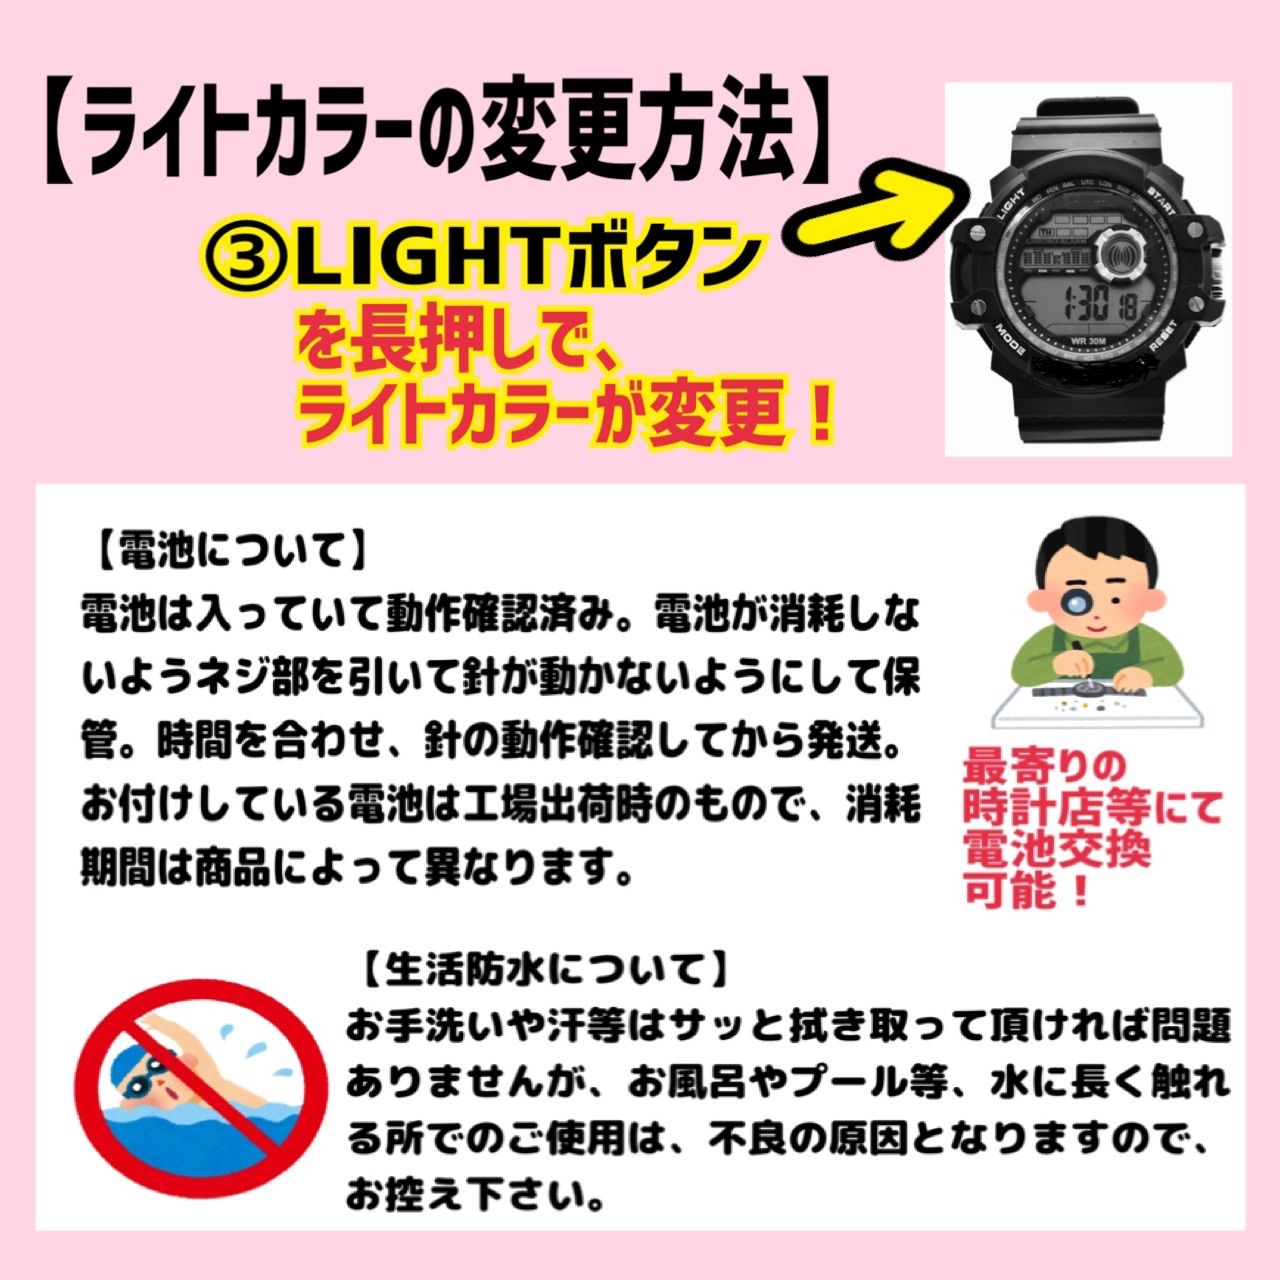 16送料無料 ＡＯＳＵＮ 腕時計デジタル多機能LEDブラック×メタルゴールド-5